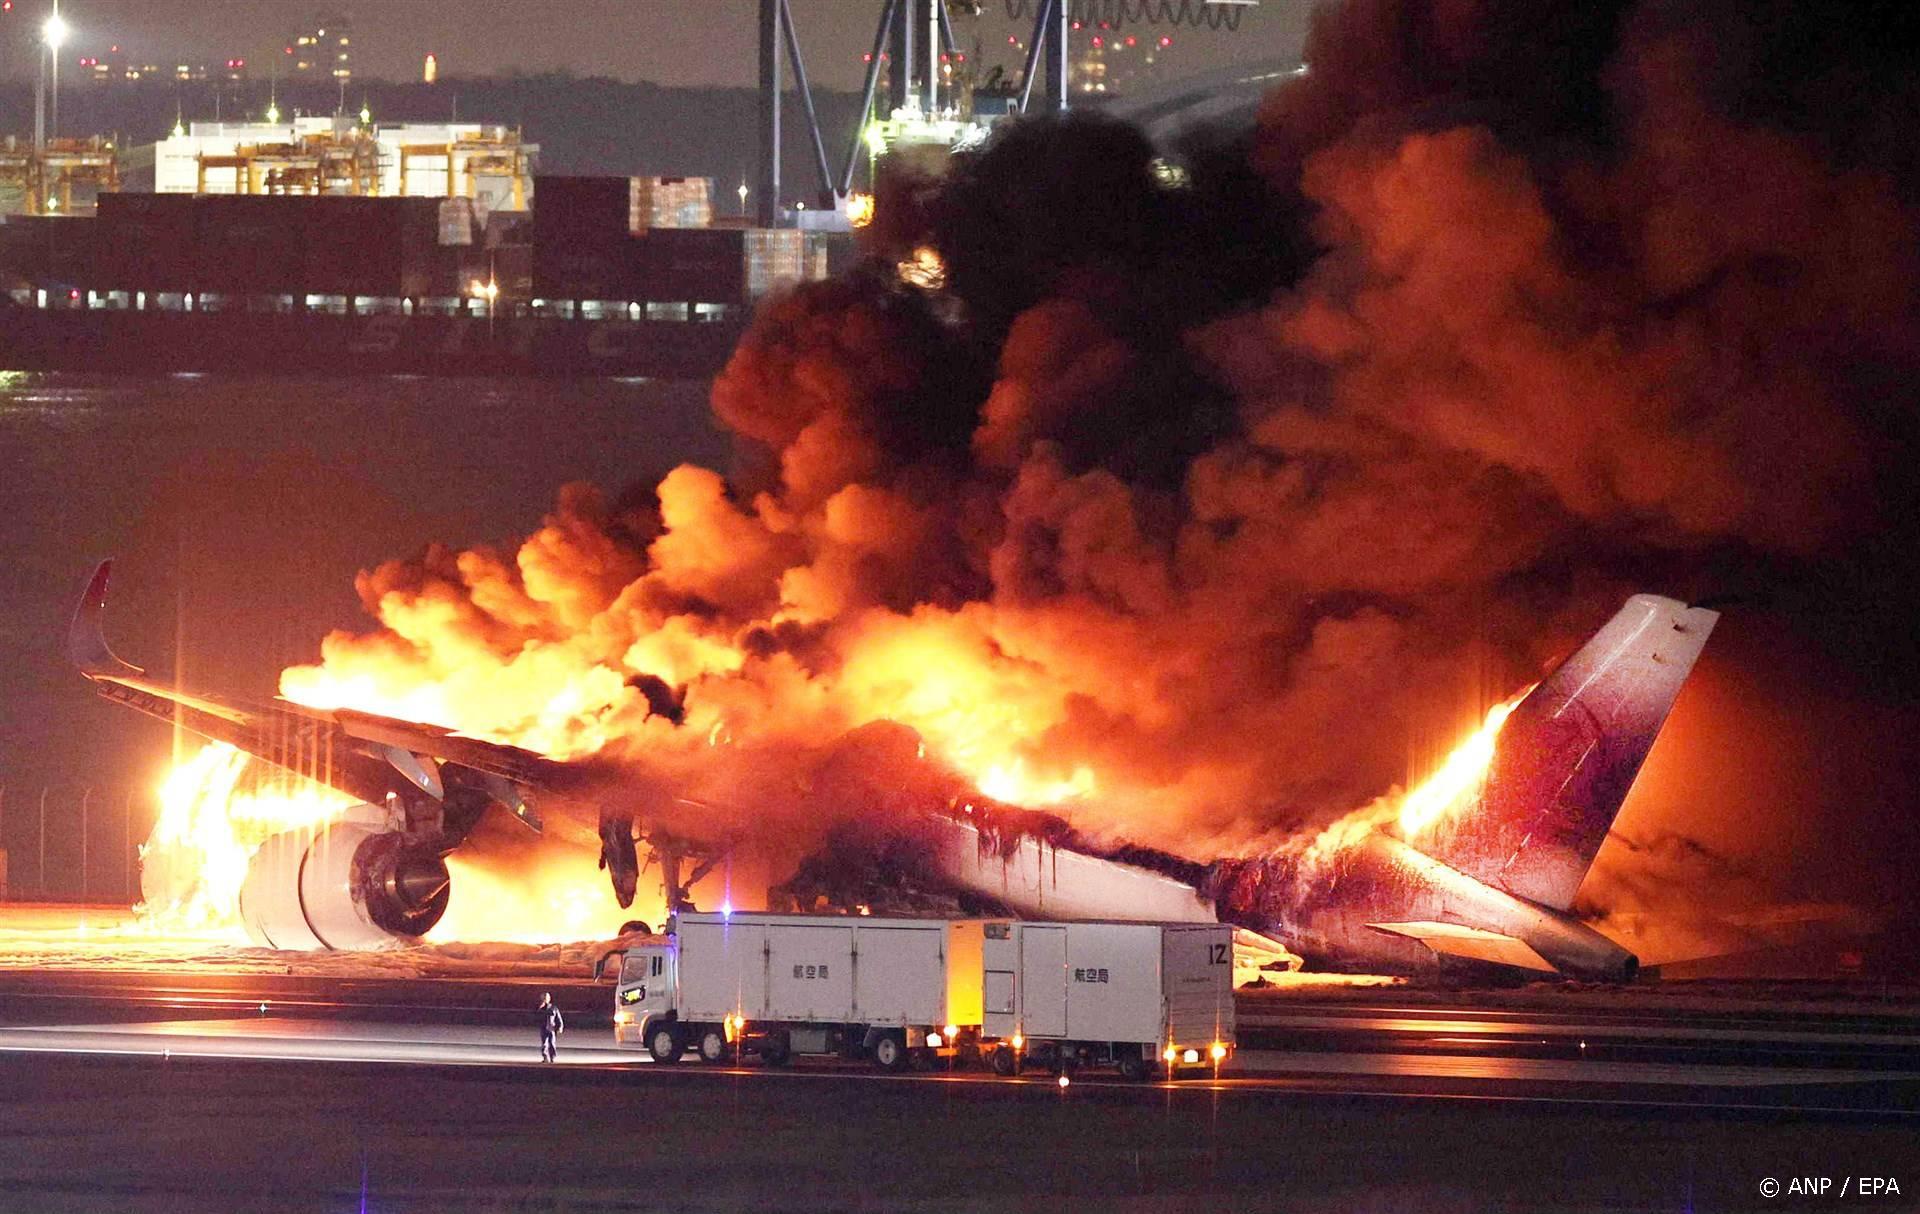 Doden na botsing vliegtuigen op luchthaven Tokio.